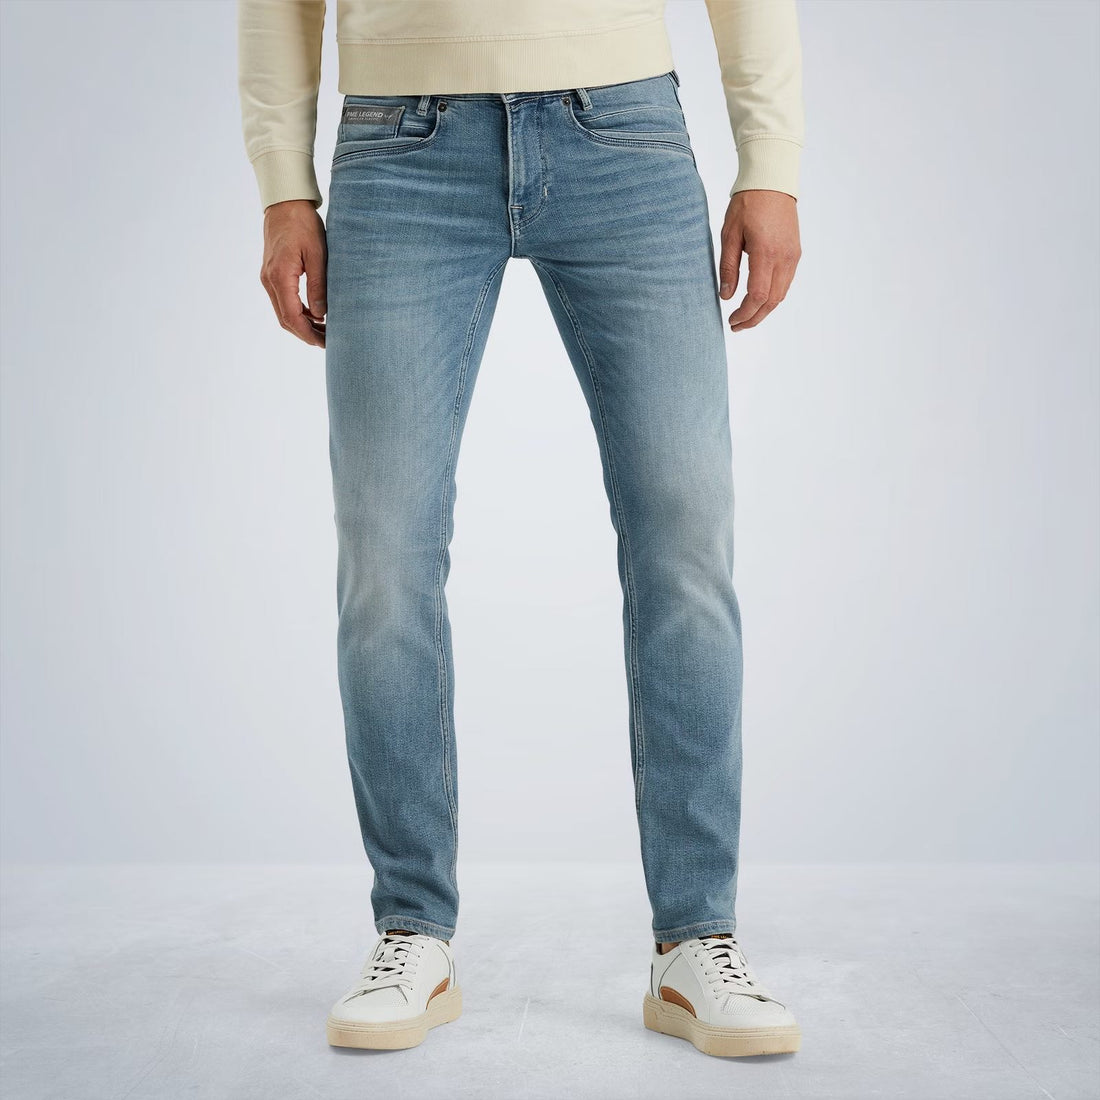 De nieuwste fit van PME Legend: de Skyrak jeans. Deze jeans heeft een regular fit die vergelijkbaar is met die van de PME Legend Nightflight jeans, maar boven net iets ruimer zit. Hij is uitgevoerd in een zachte denim met comfort stretch. Unieke details, zoals de siliconen rand op de voor- en achterzakken geïnspireerd op de vorm van een propeller, geven deze jeans een kenmerkende, maar moderne PME Legend uitstraling.